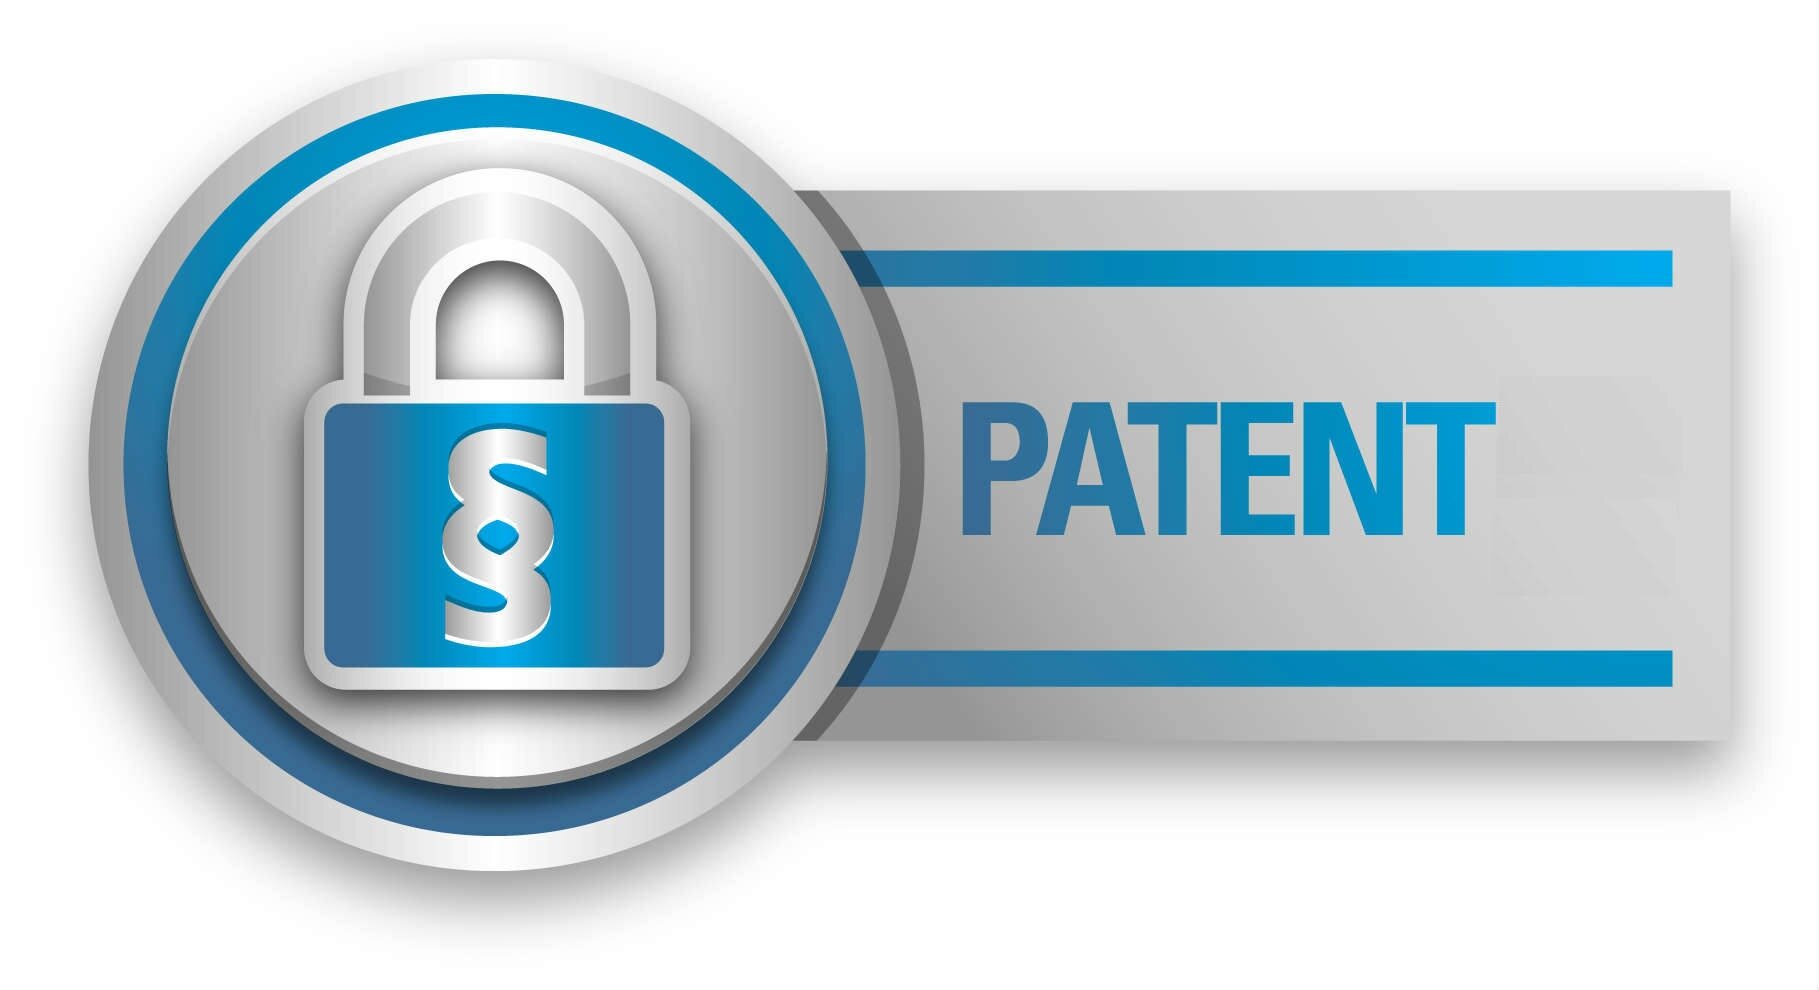 Patented product. Значок патента. Патент на логотип. Запатентовано иконка. Патент пиктограмма.